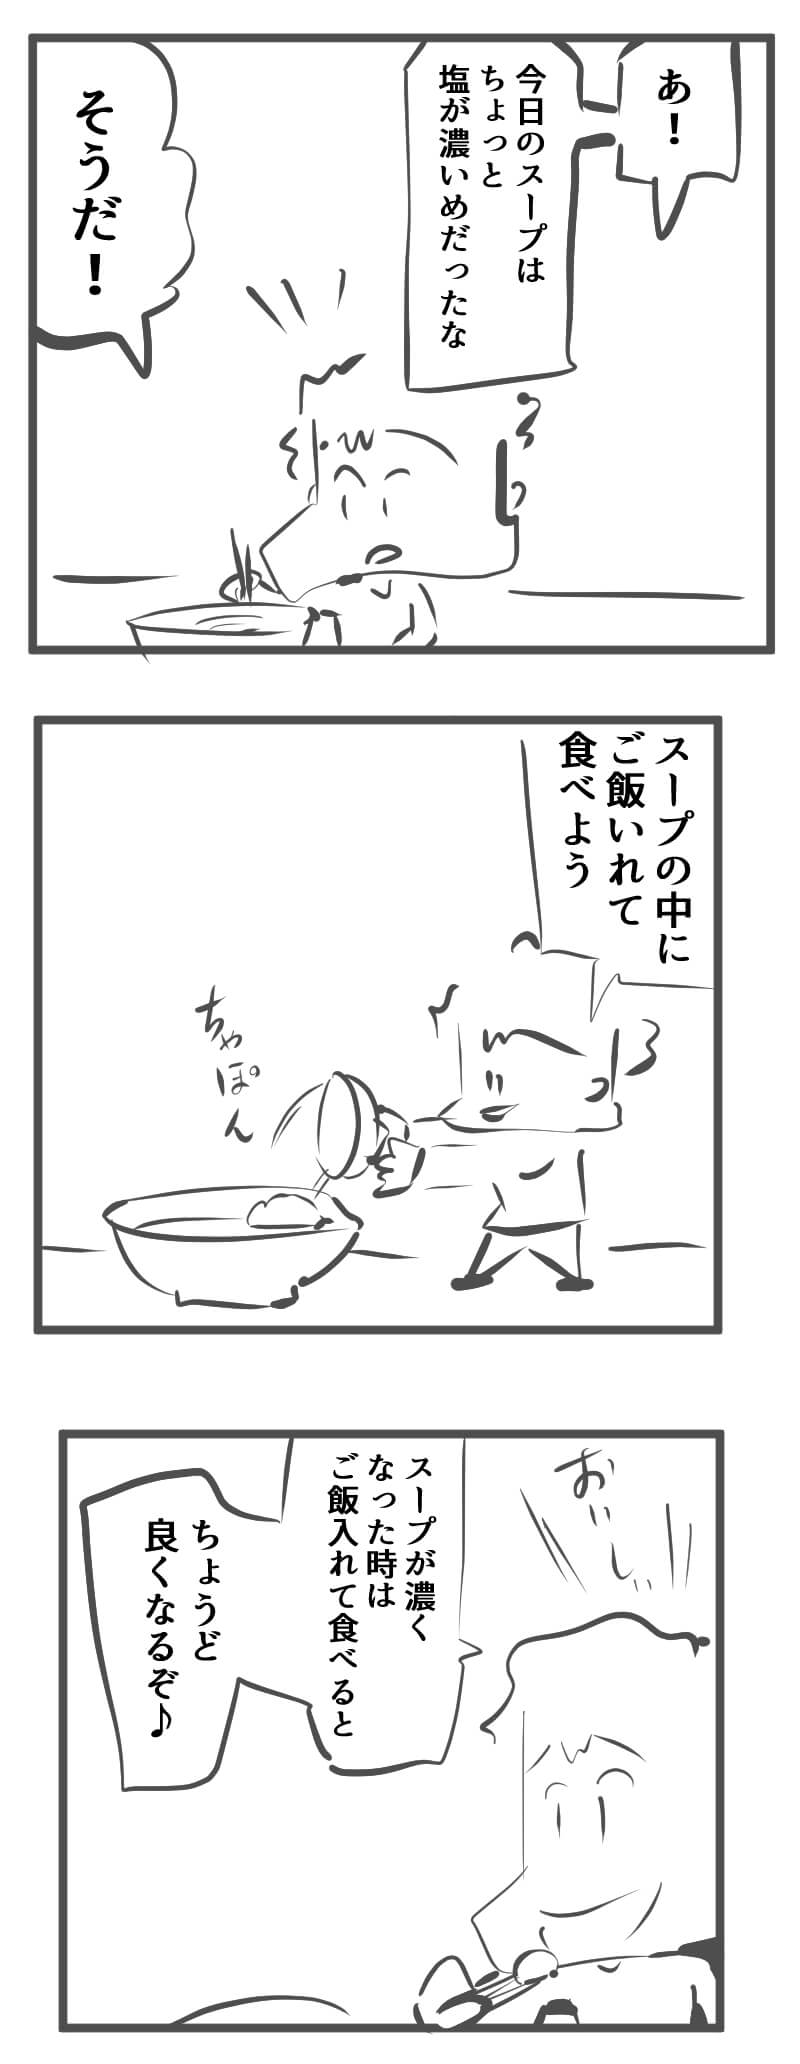 スープ,絵日記